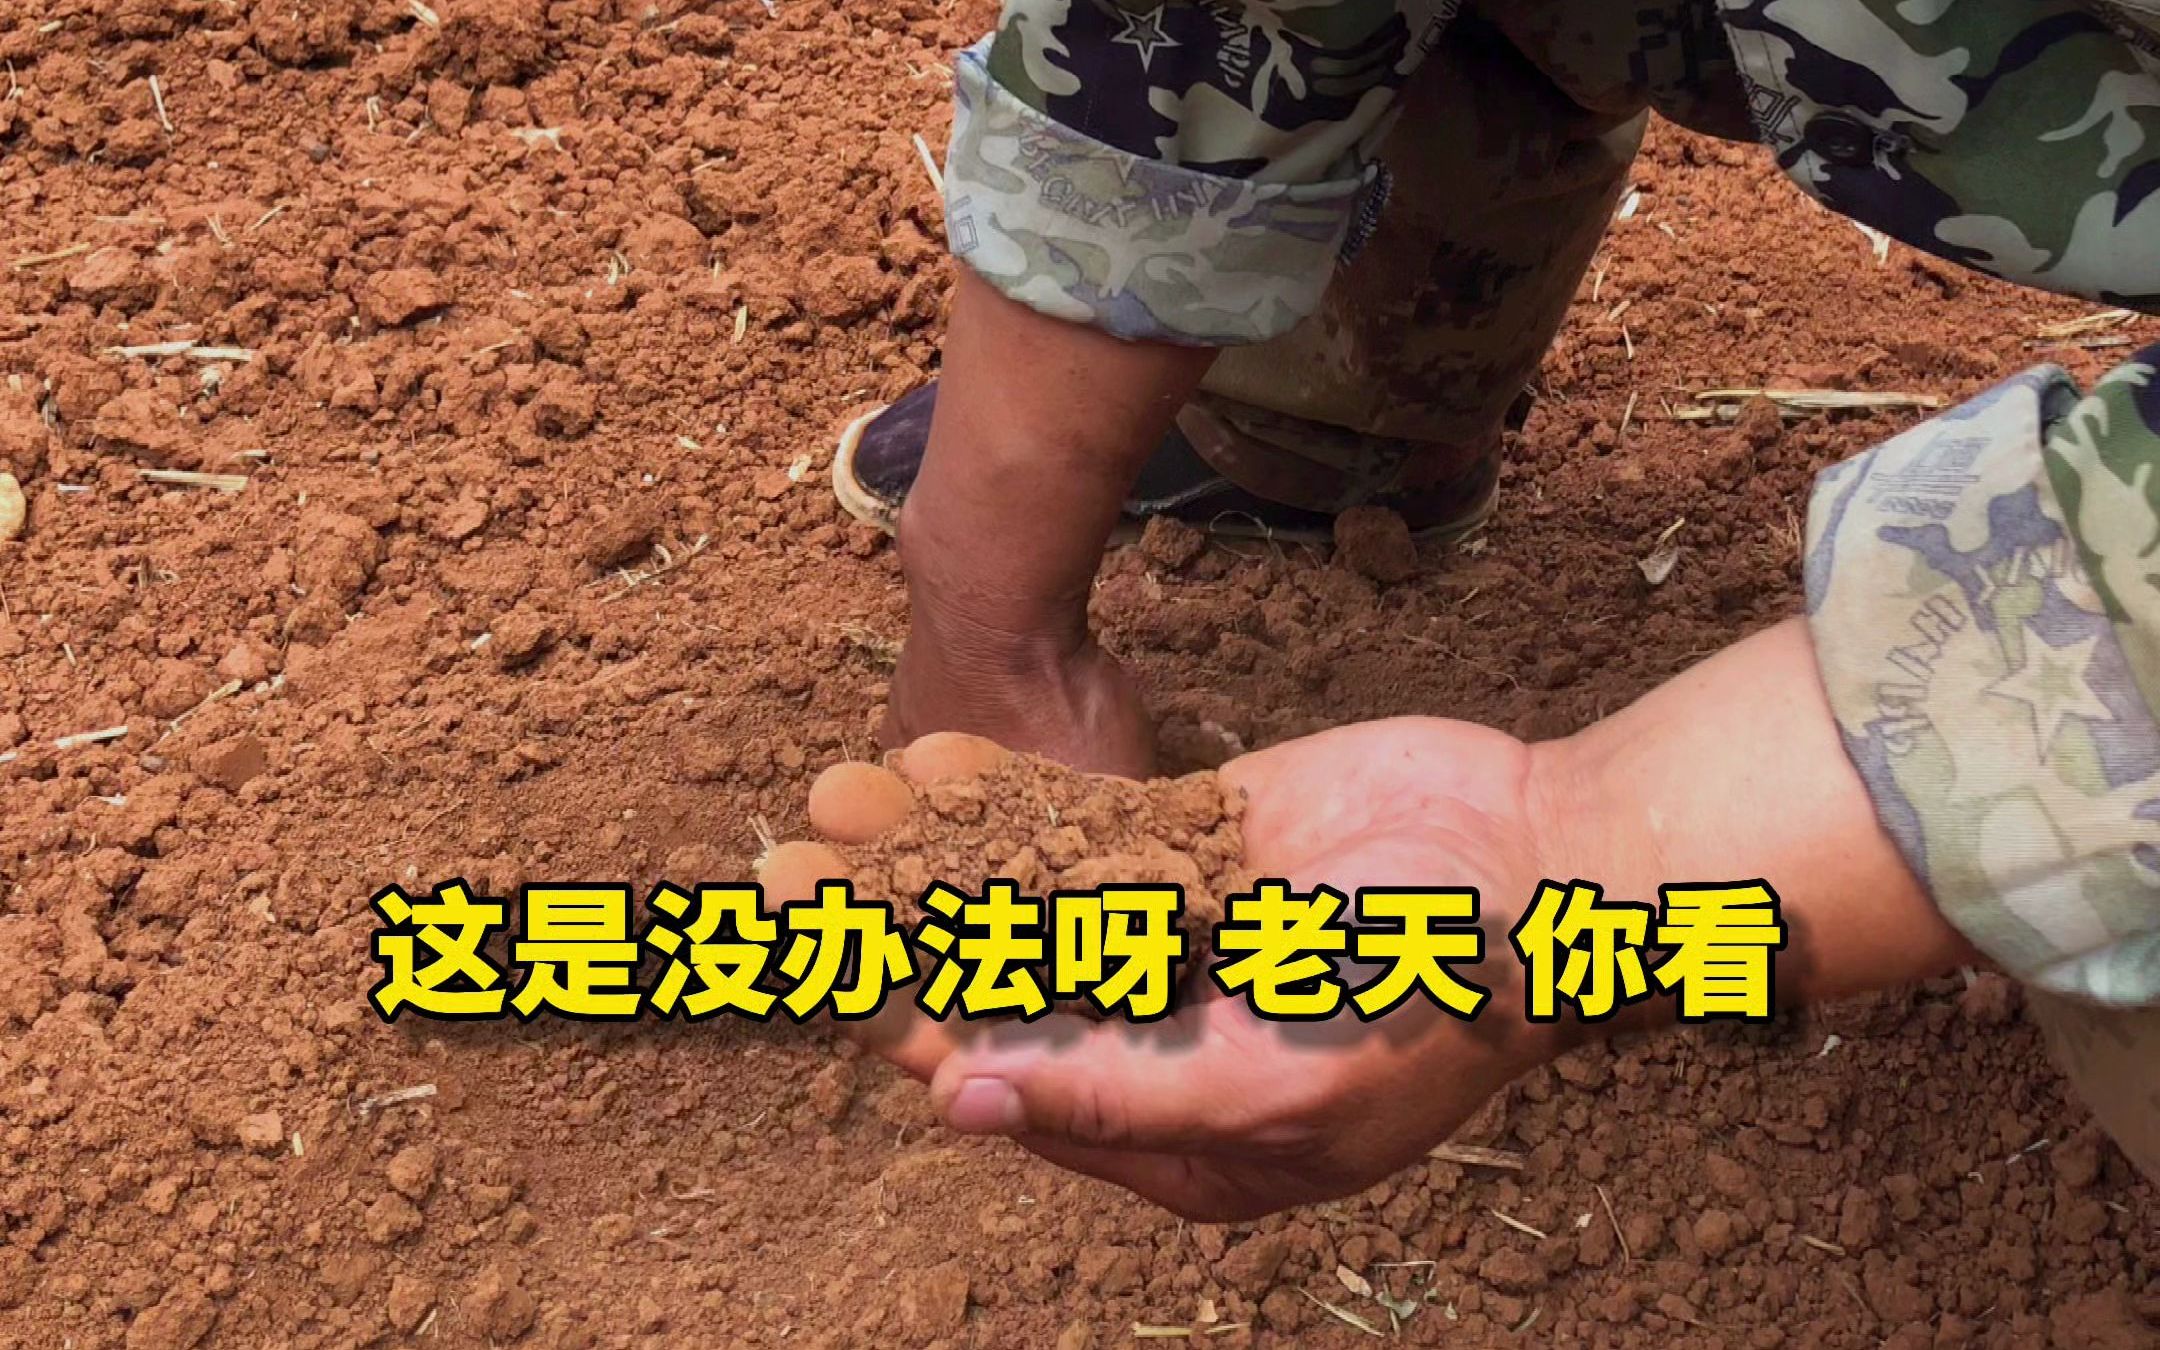 沁州黄小米集团支援檀山村抗旱救灾行动